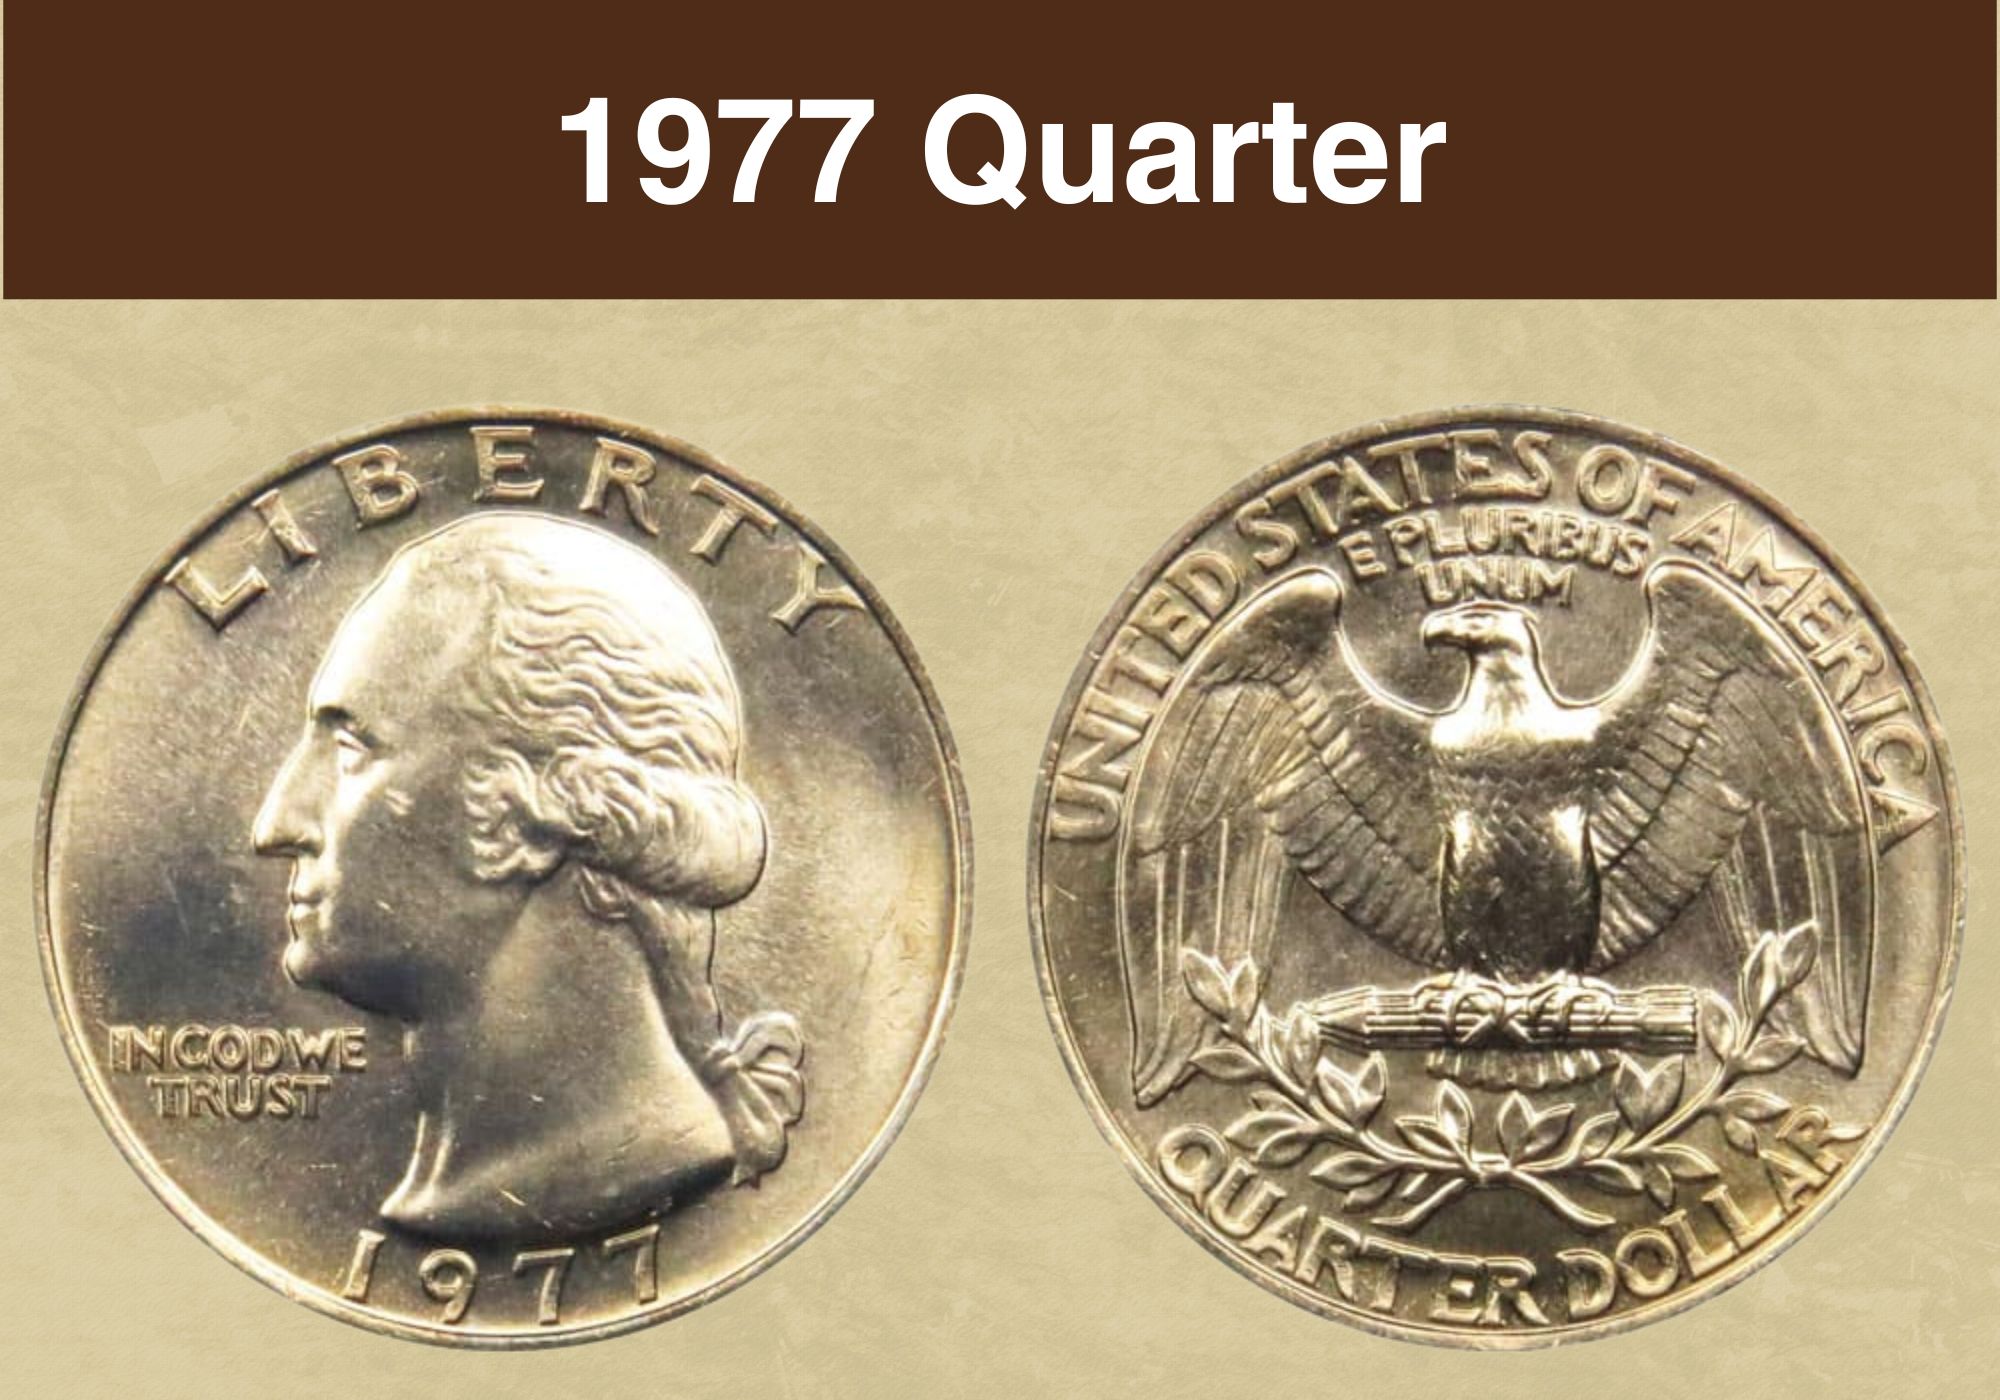 1977 Quarter Value